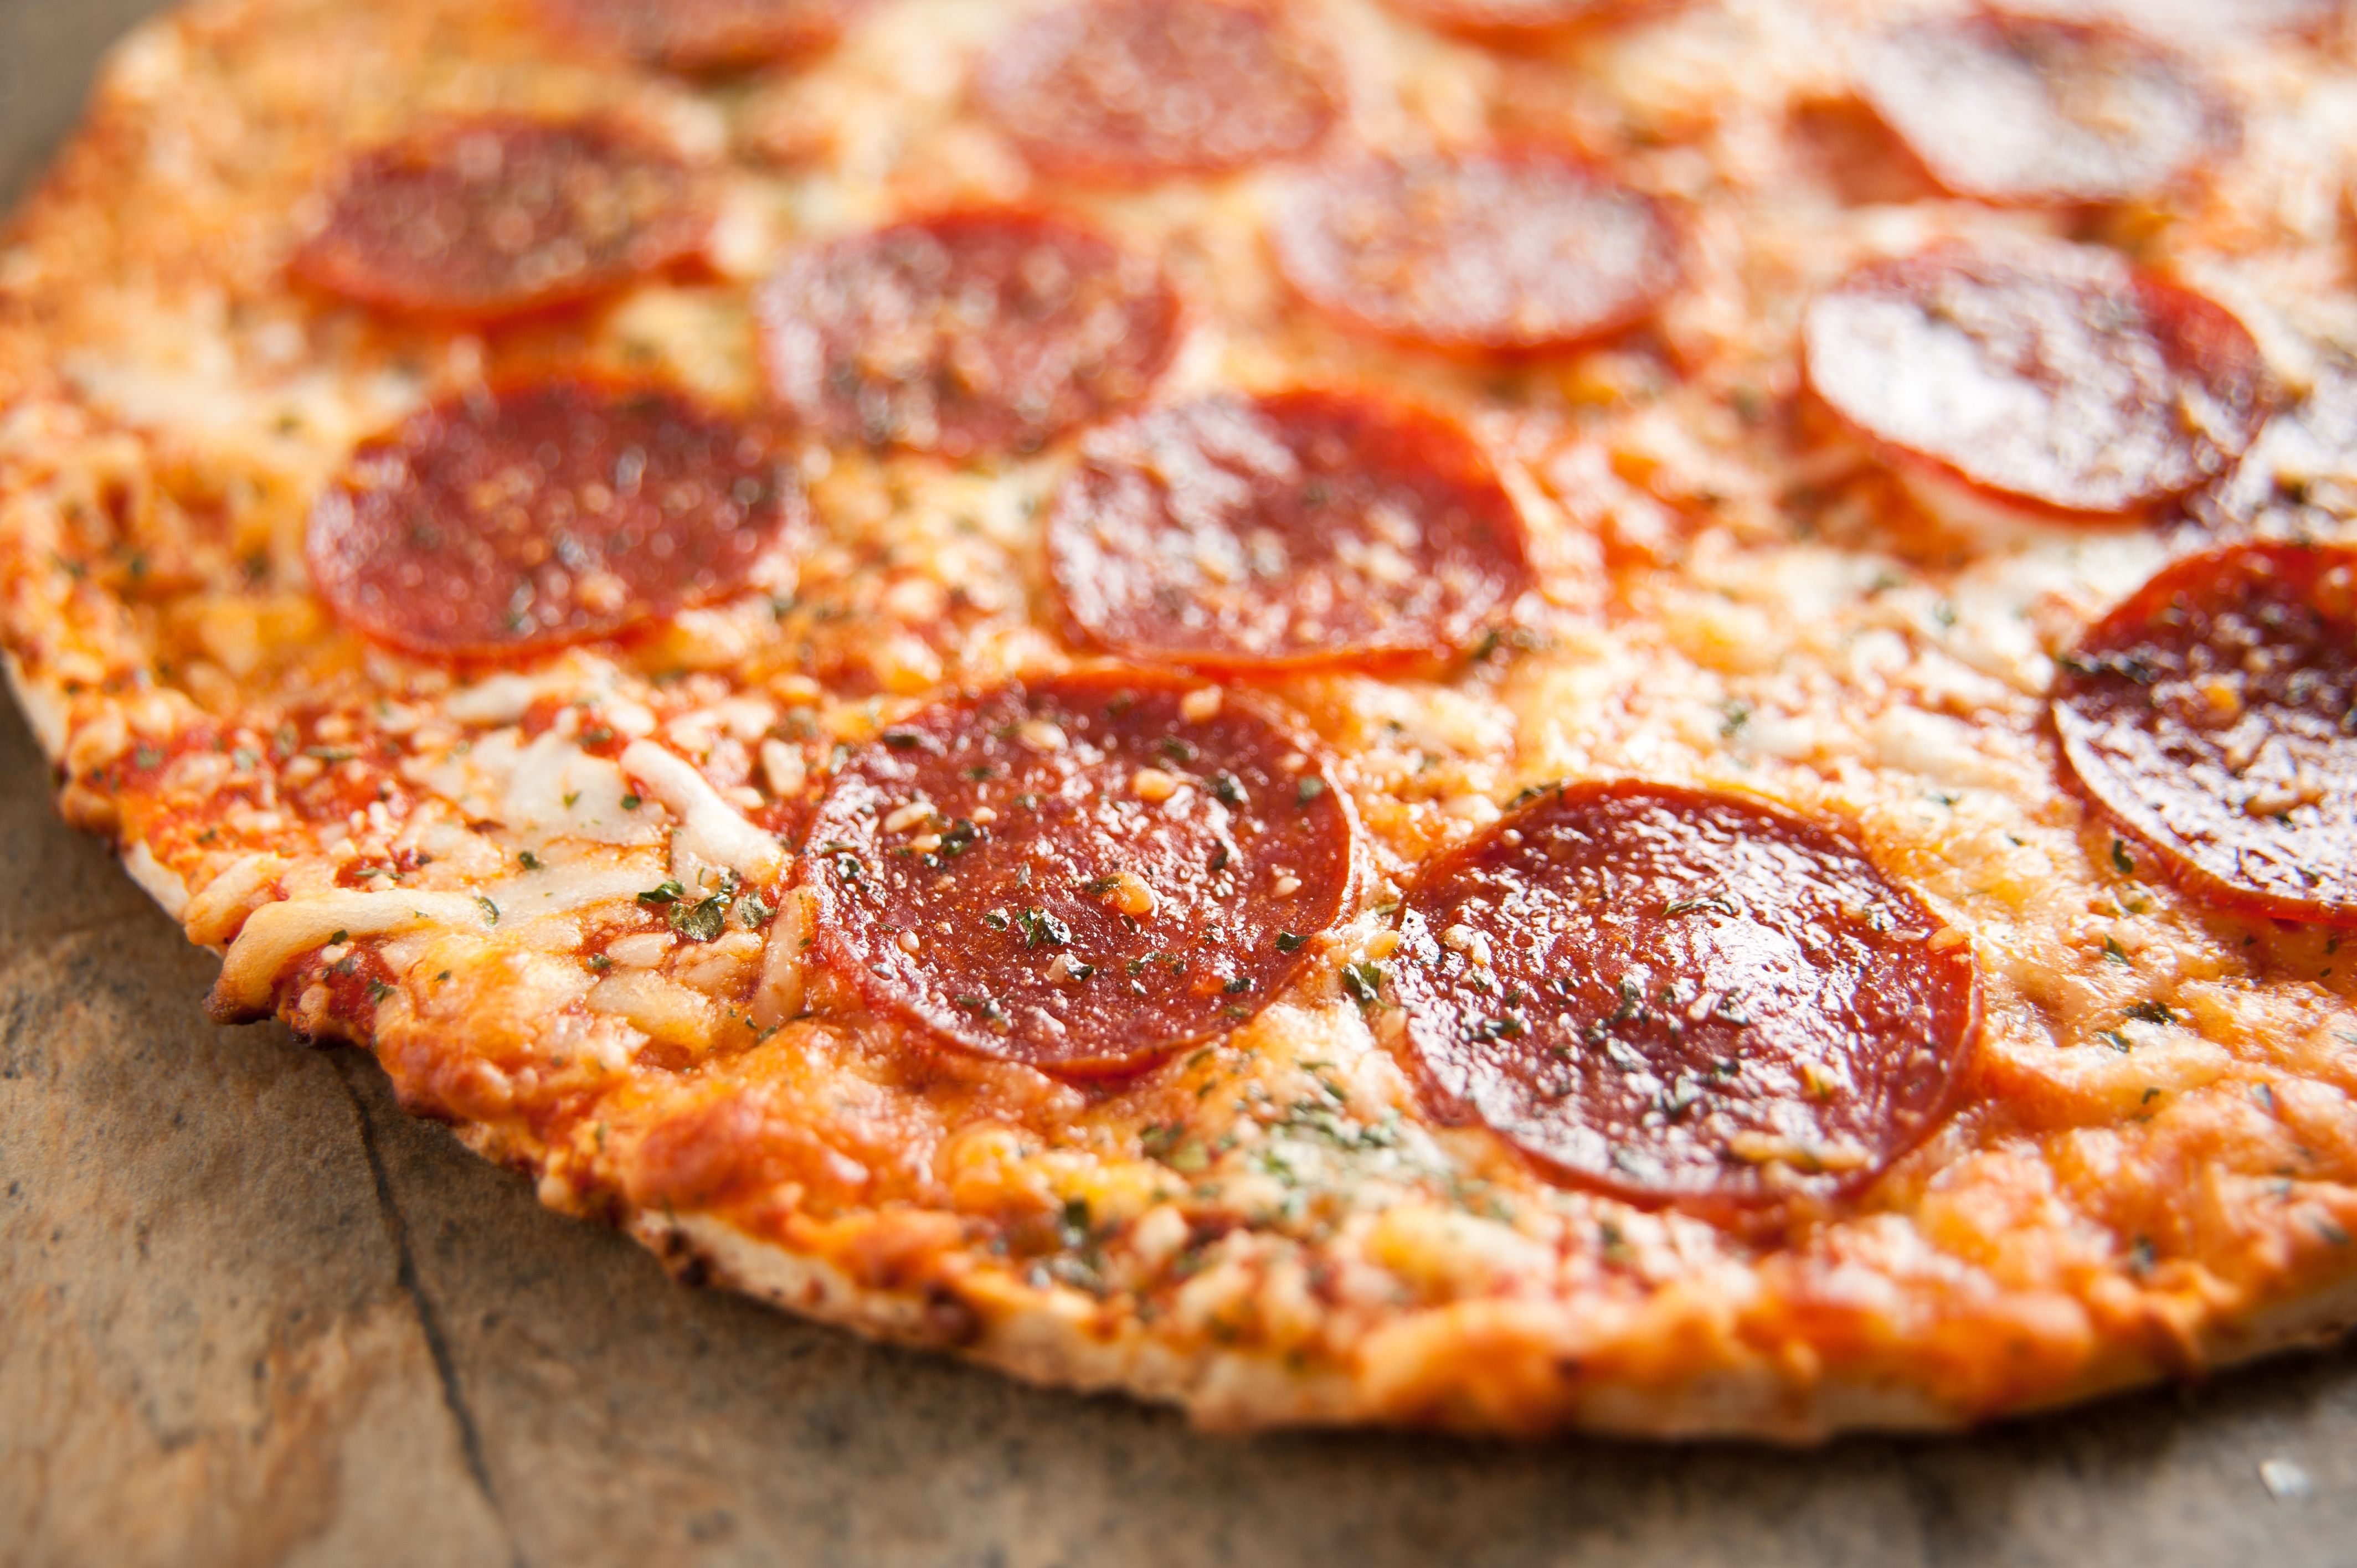 сколько калорий в одном куске пиццы пепперони из додо фото 62